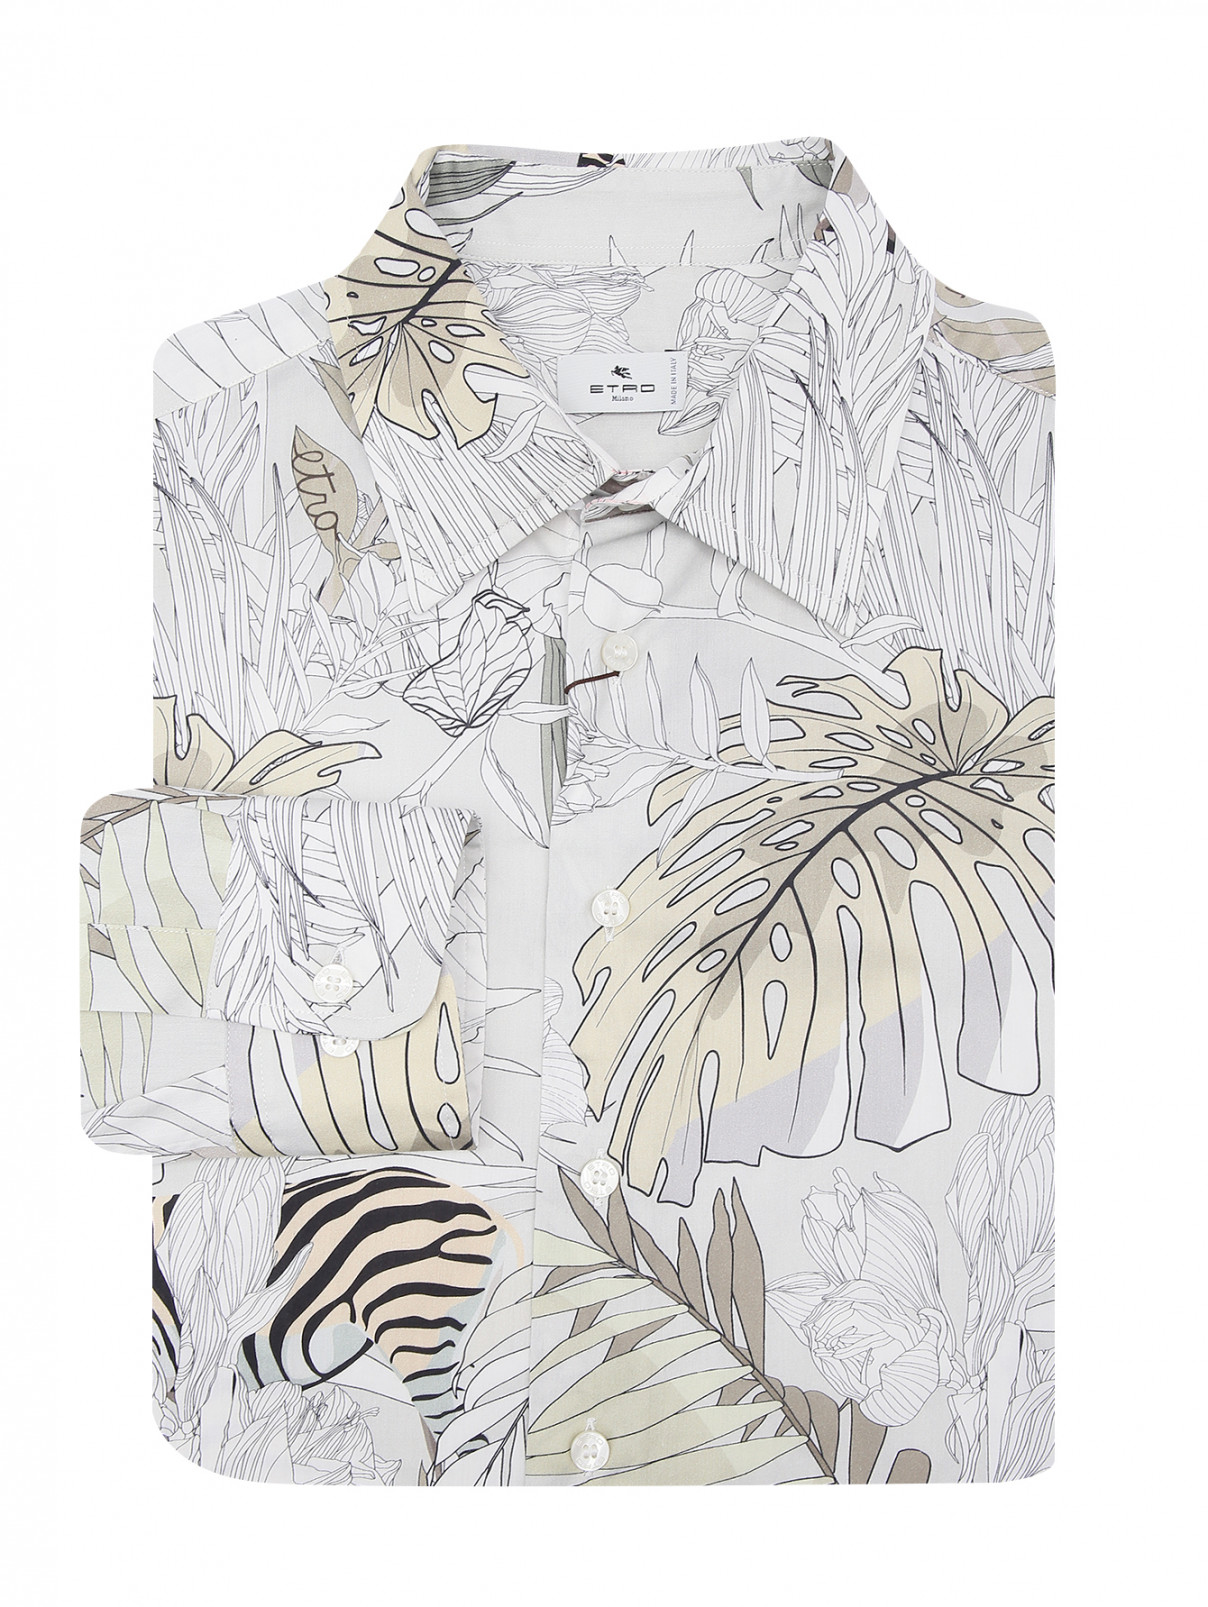 Рубашка из хлопка с узором Etro  –  Общий вид  – Цвет:  Серый